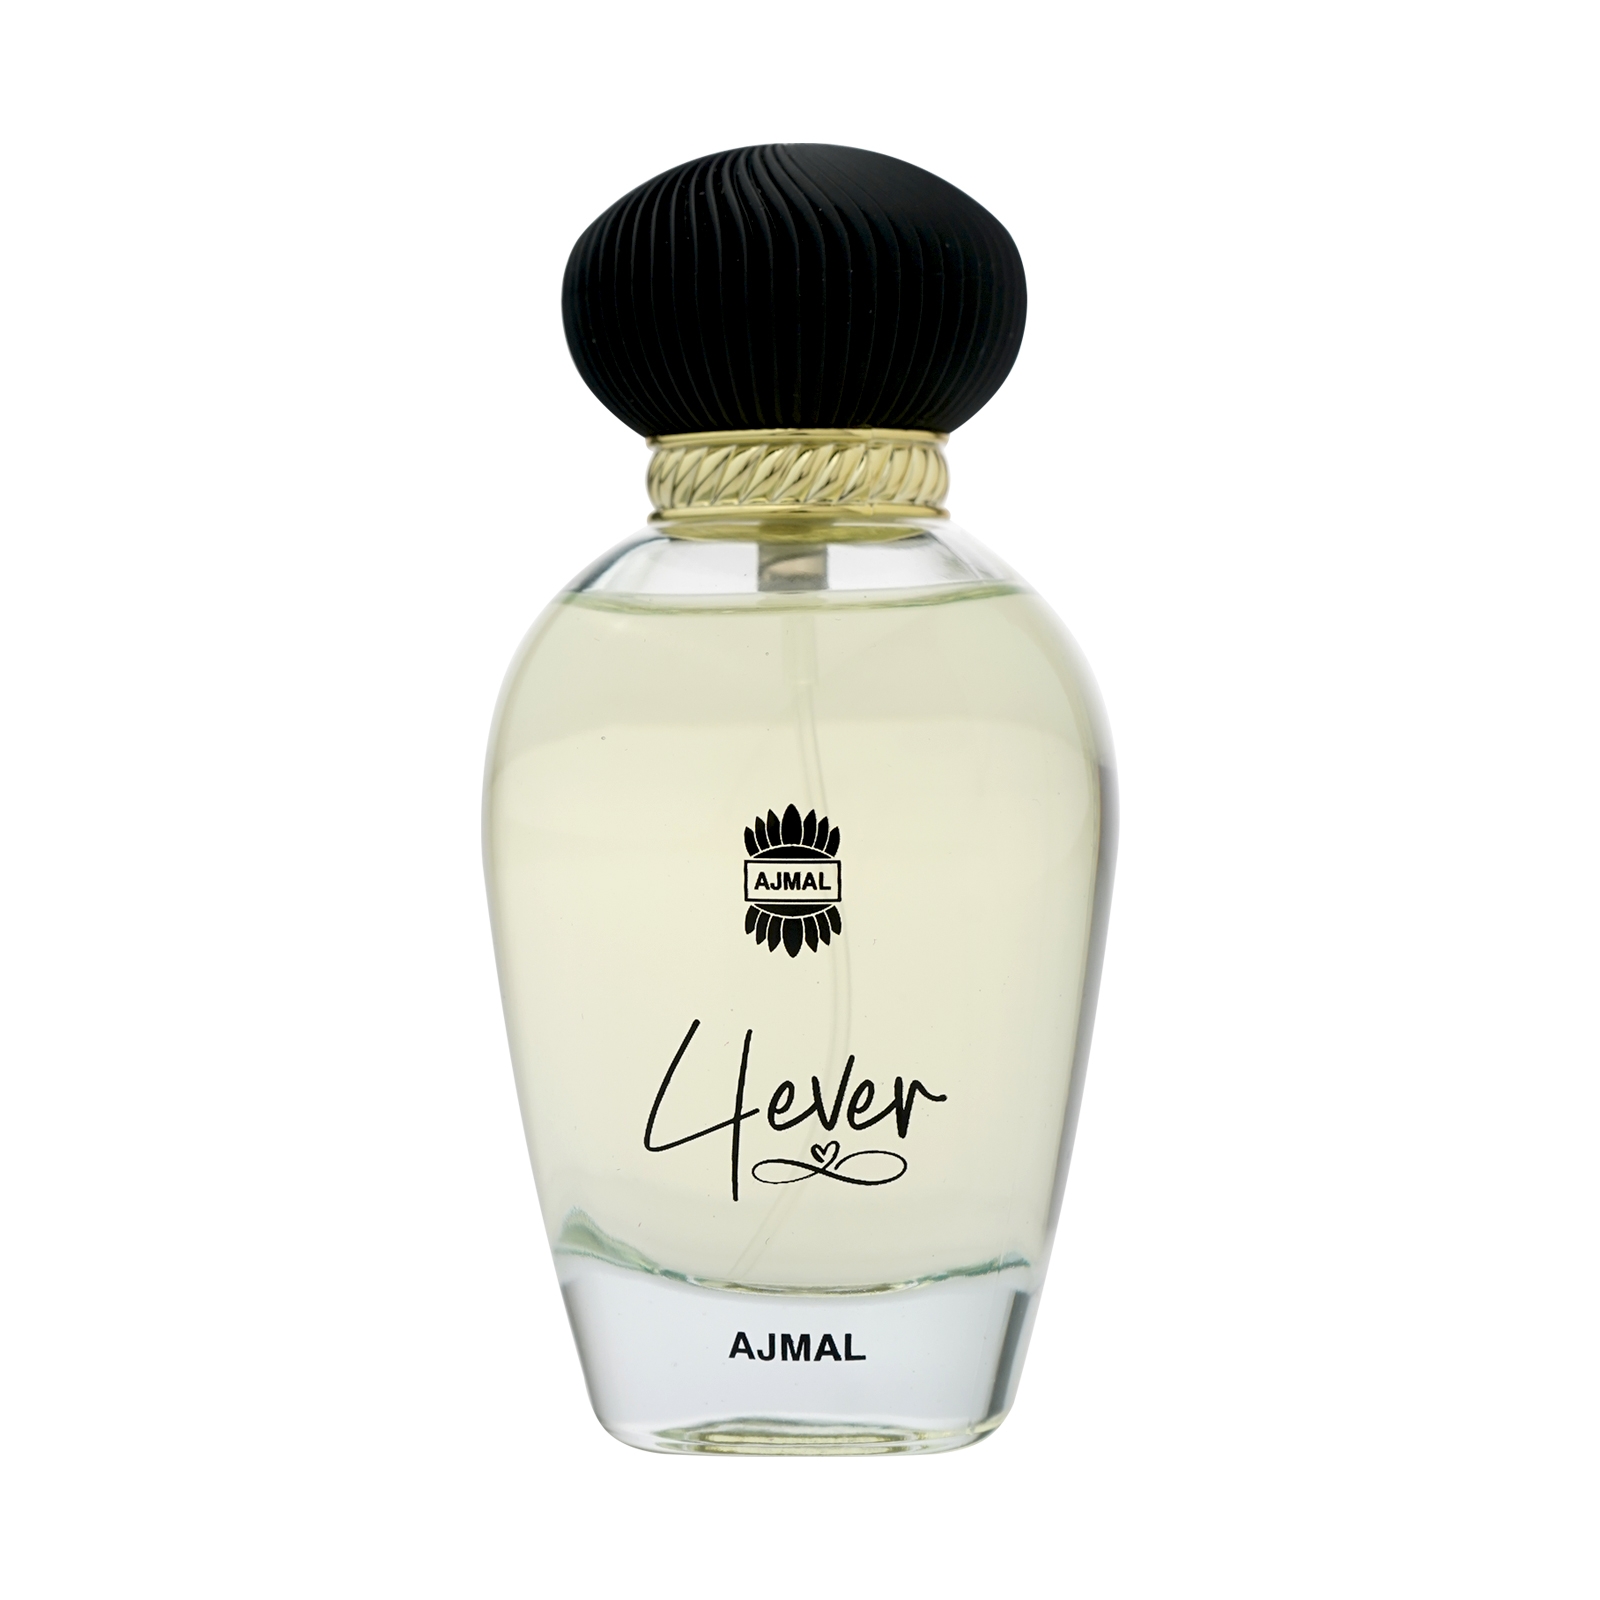 Ajmal | Ajmal 4Ever Edp Perfume 100Ml Long Lasting Scent Spray Gift For Women +2 Tester